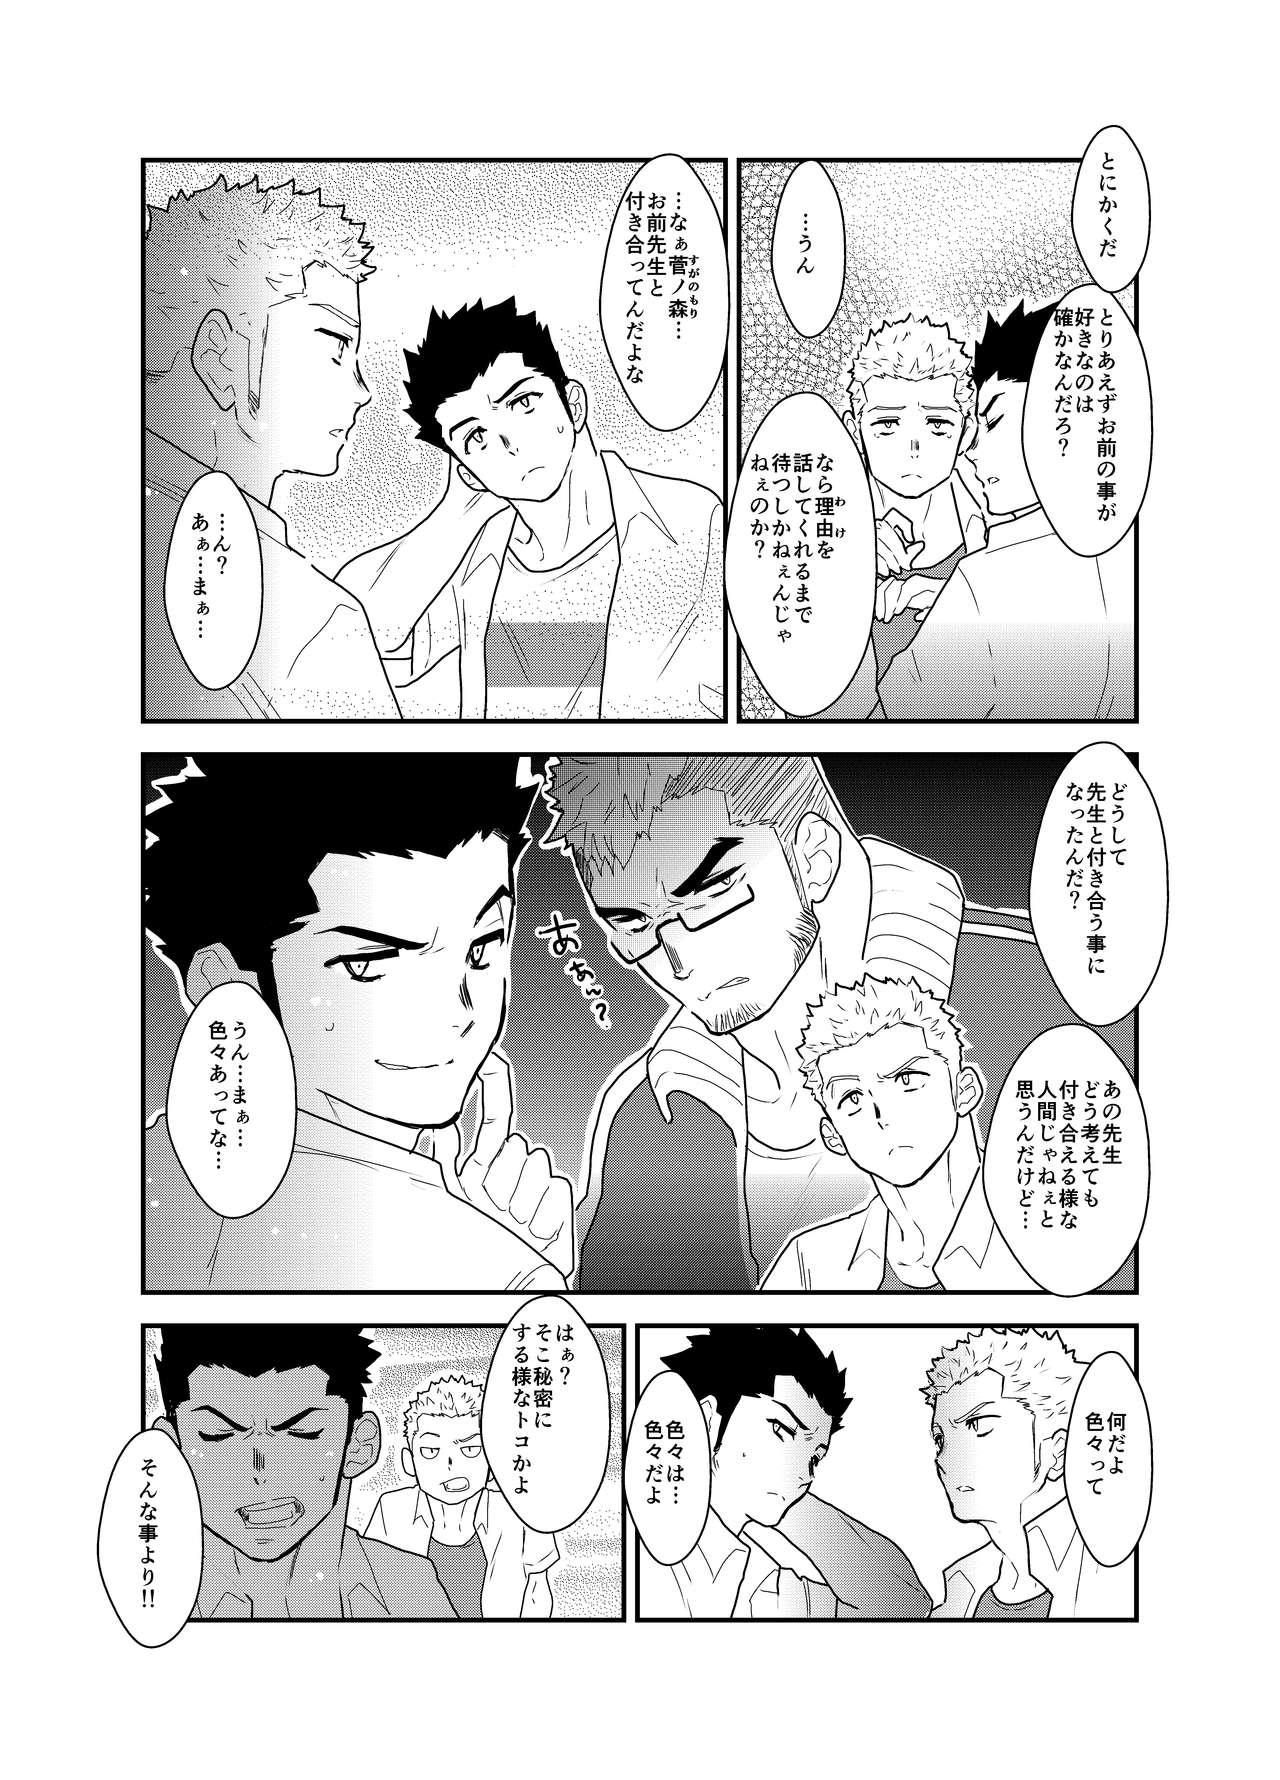 Cutie Aitsu ga Ore to Tsukiaenai Riyuu ga Mattaku Wakaranai no desu ga. - Original Women Sucking - Page 6